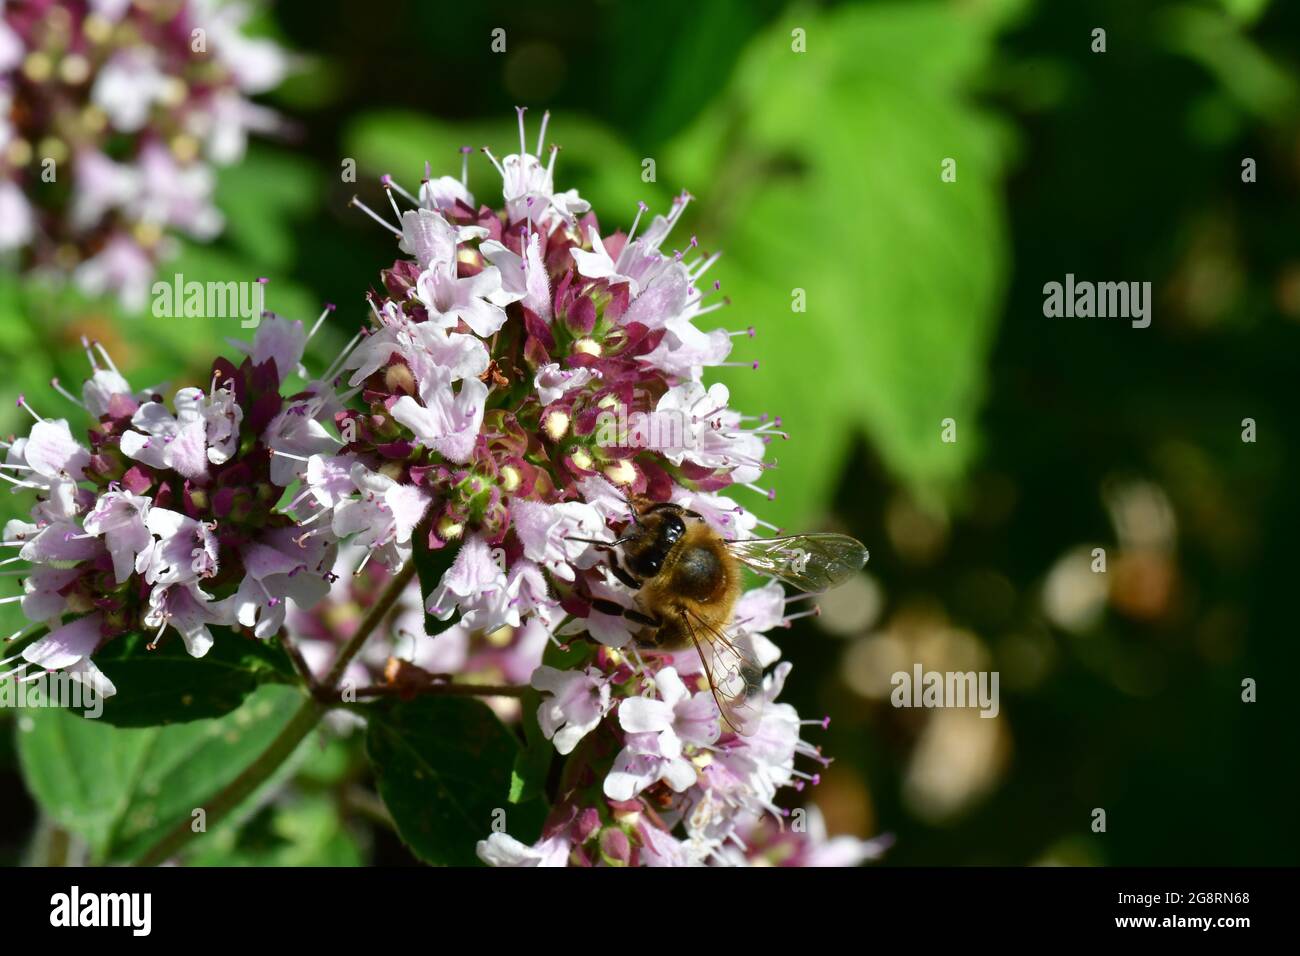 Abeille (API mellifera) se nourrissant sur des fleurs de marjolaine dans un jardin du Somerset. Angleterre.Royaume-Uni Banque D'Images